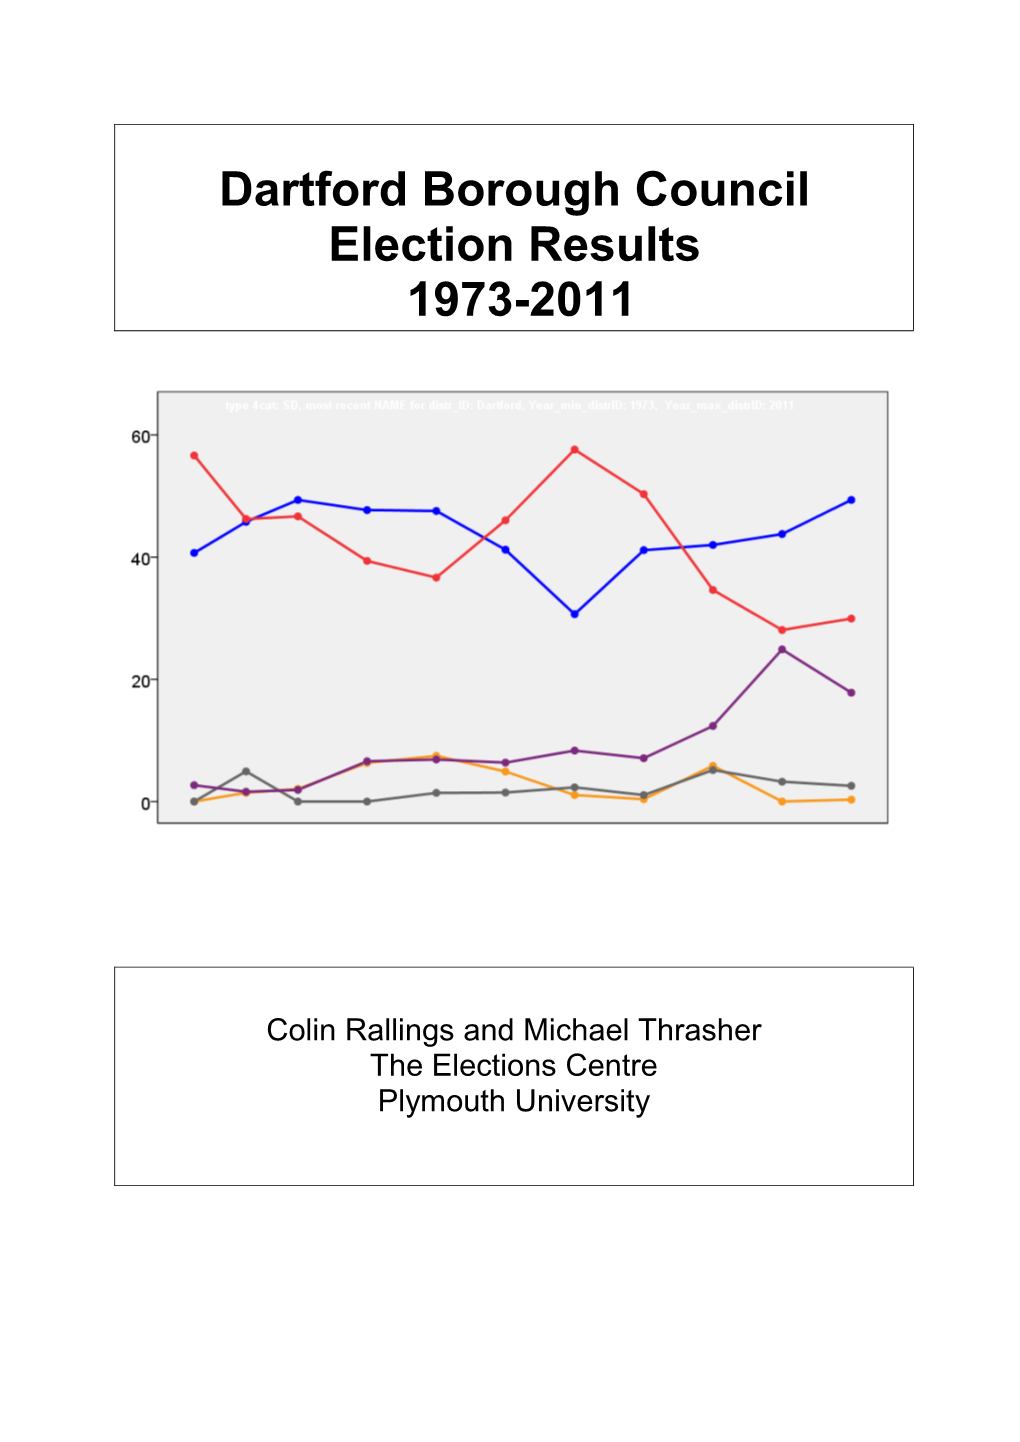 Dartford Borough Council Election Results 1973-2011